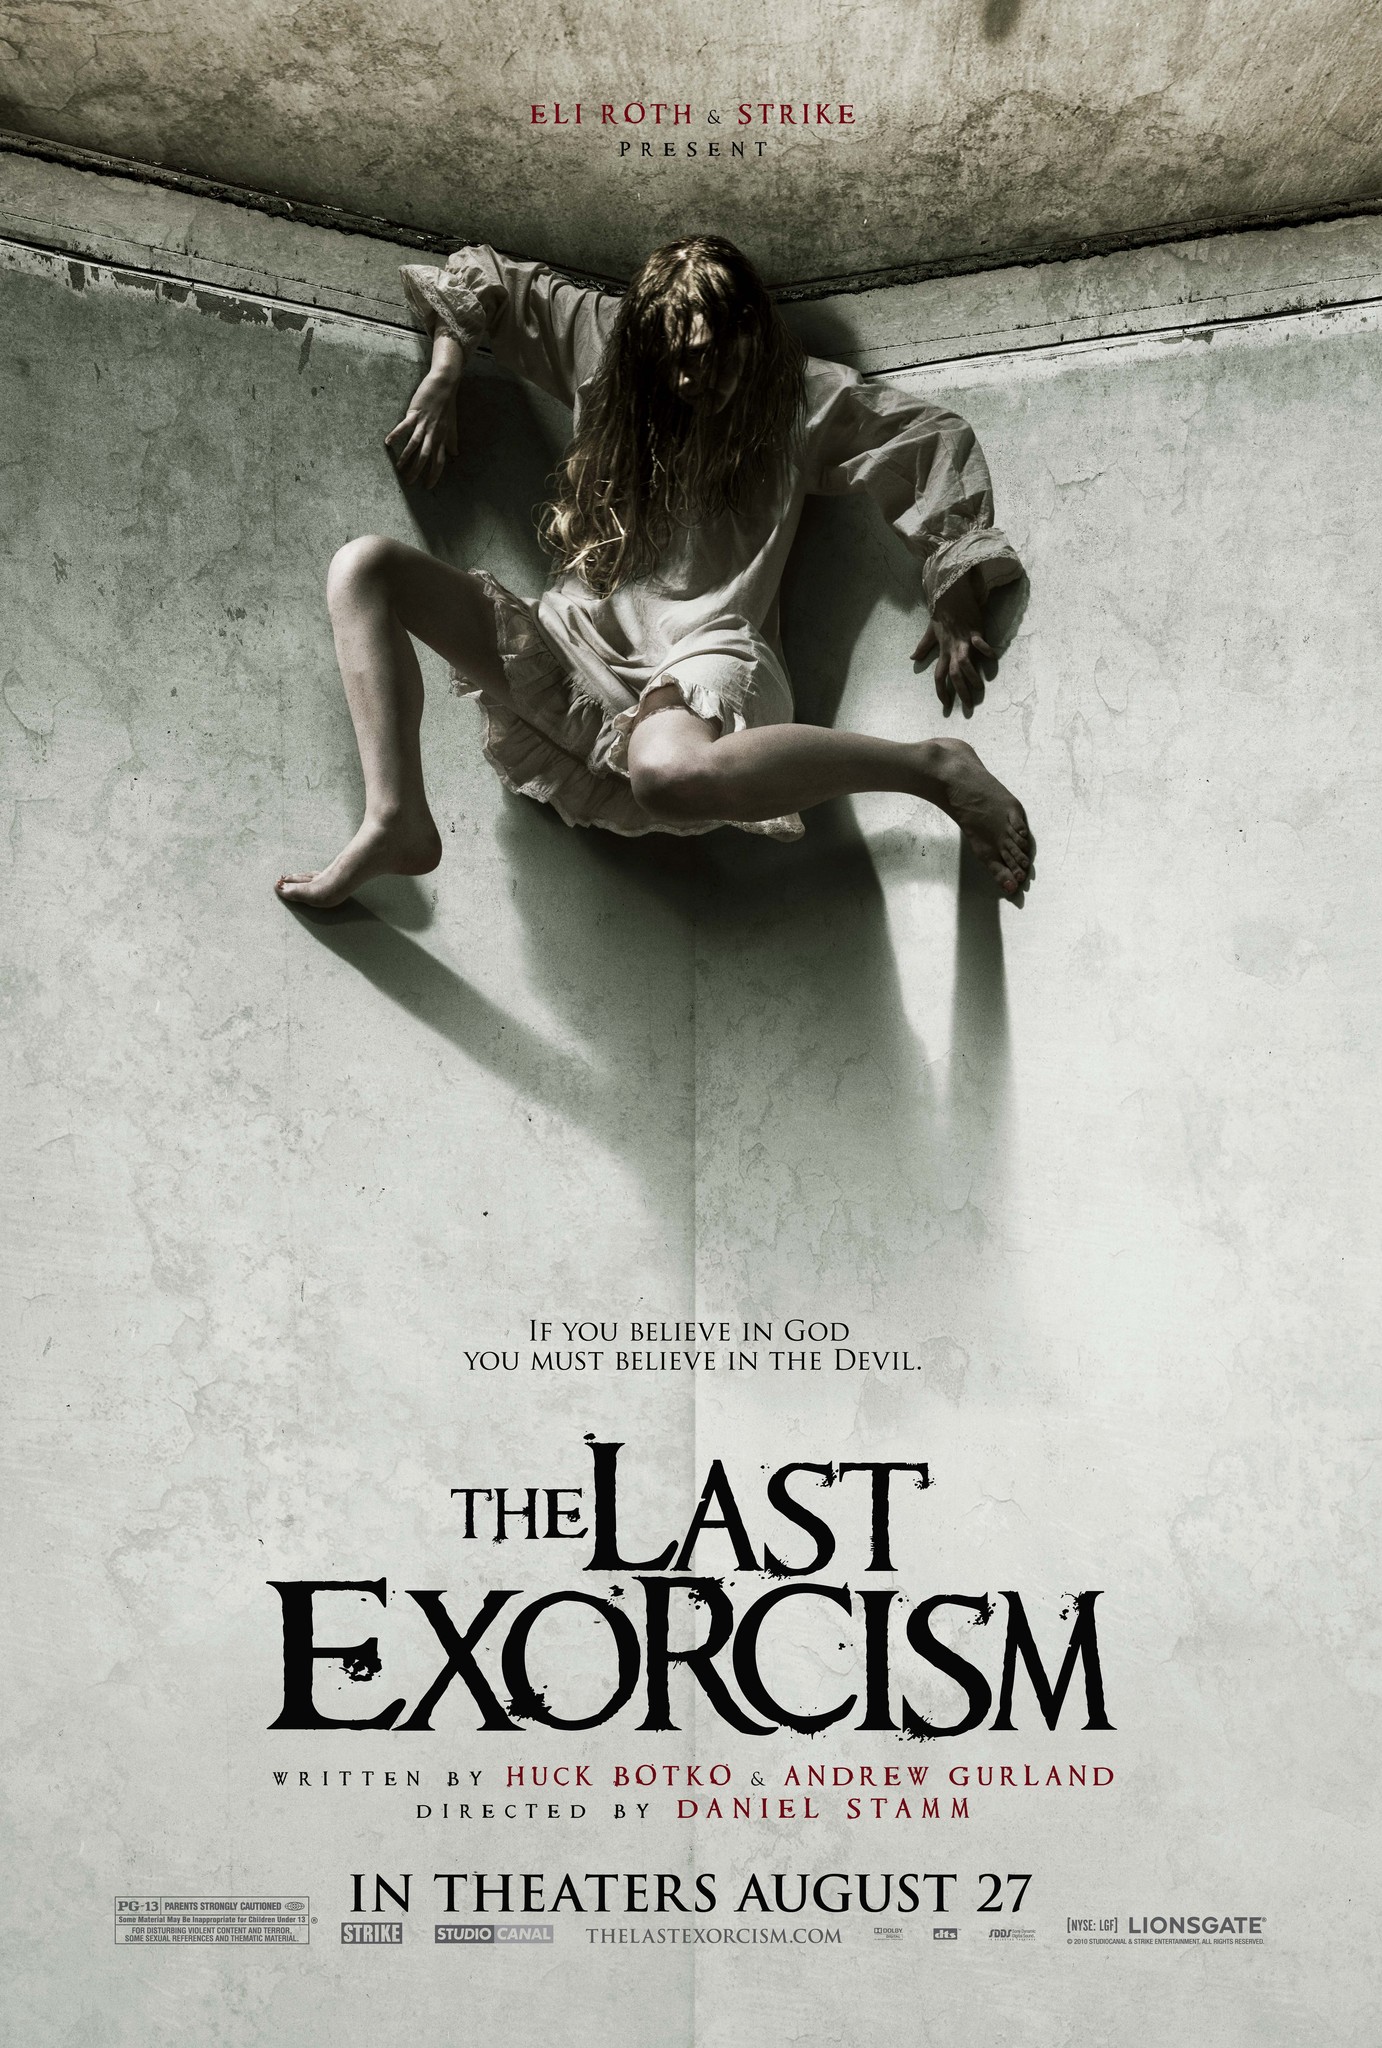 exorcist 3 full movie online